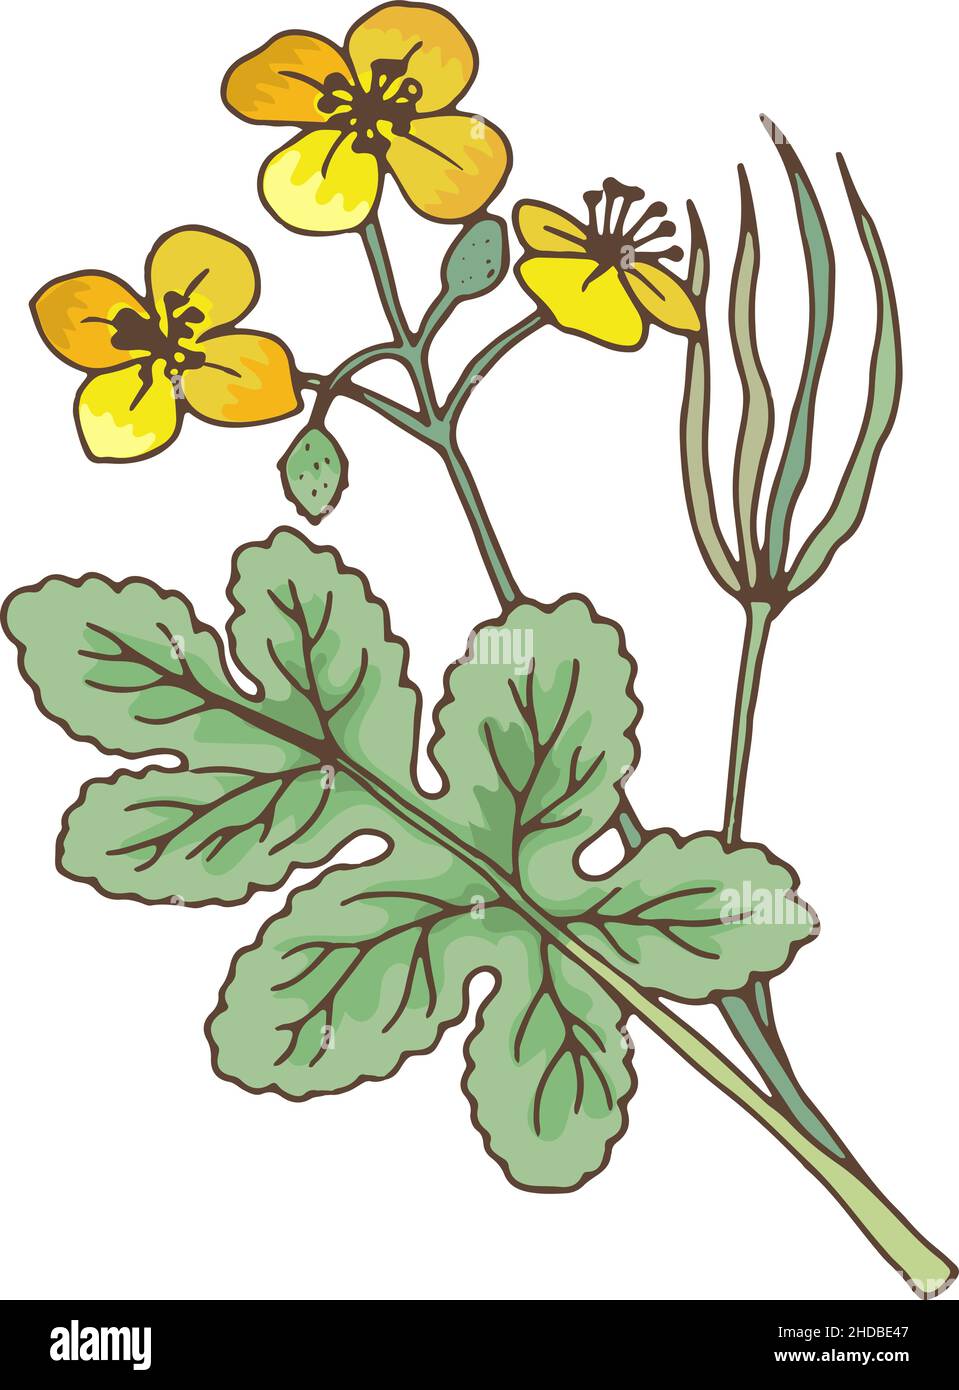 Usine de Celladines.Herbe médicale chélidonium.Illustration botanique Illustration de Vecteur